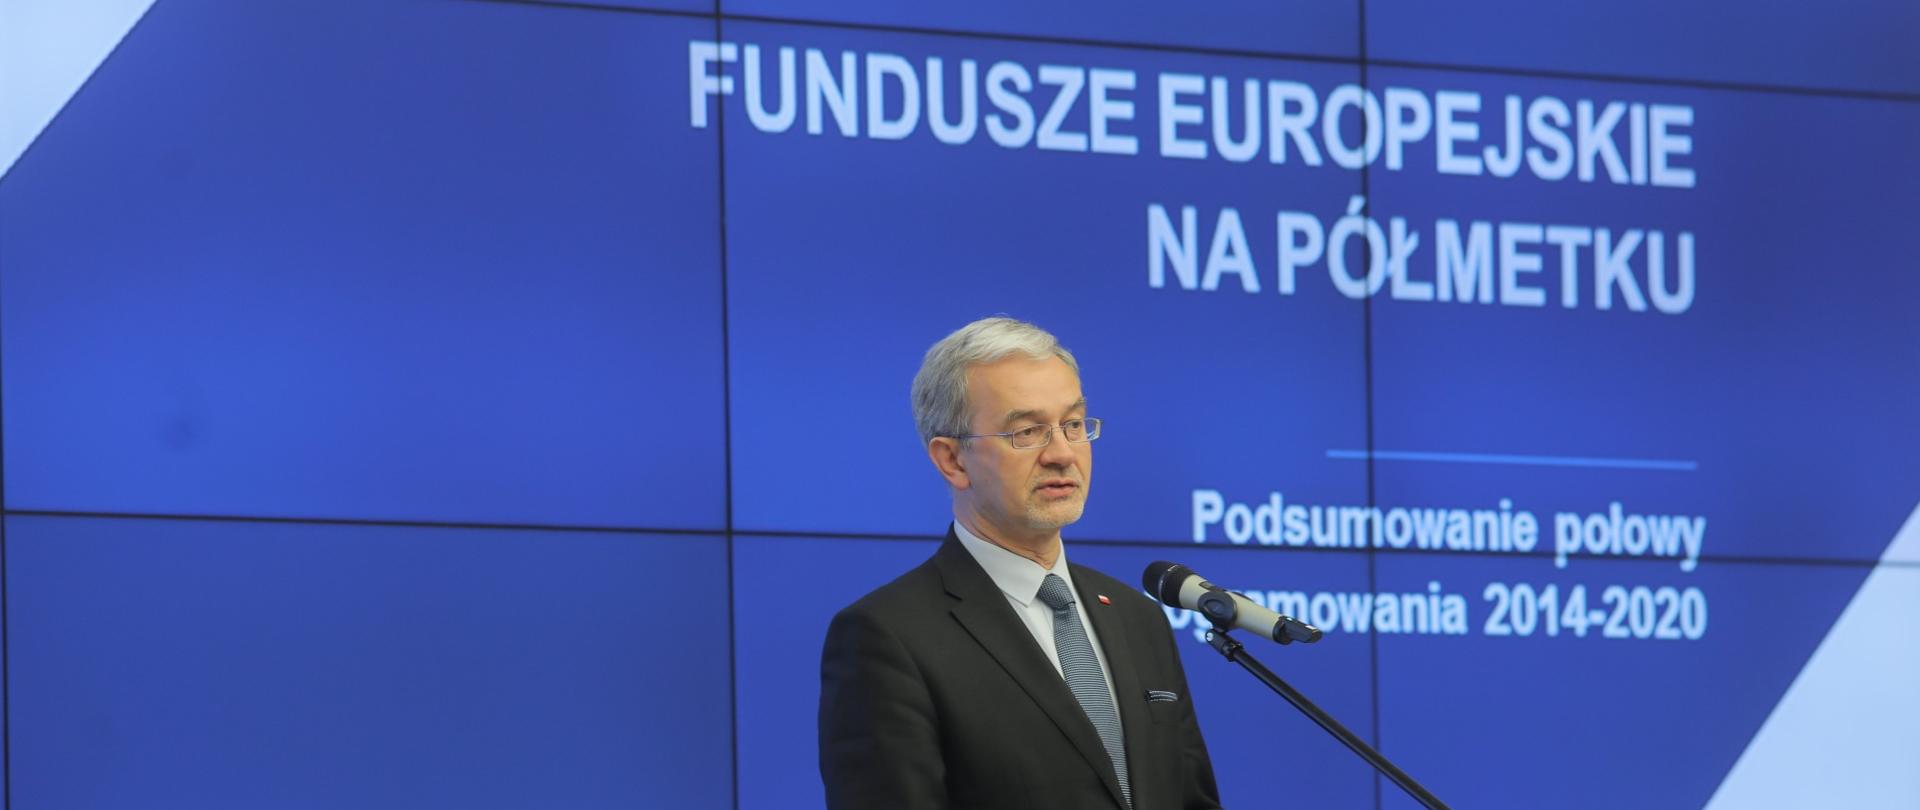 Na tle niebieskiego ekranu z napisem "Fundusze Europejskie na półmetku" stoi minister Jerzy Kwieciński, który przemawia do mikrofonu